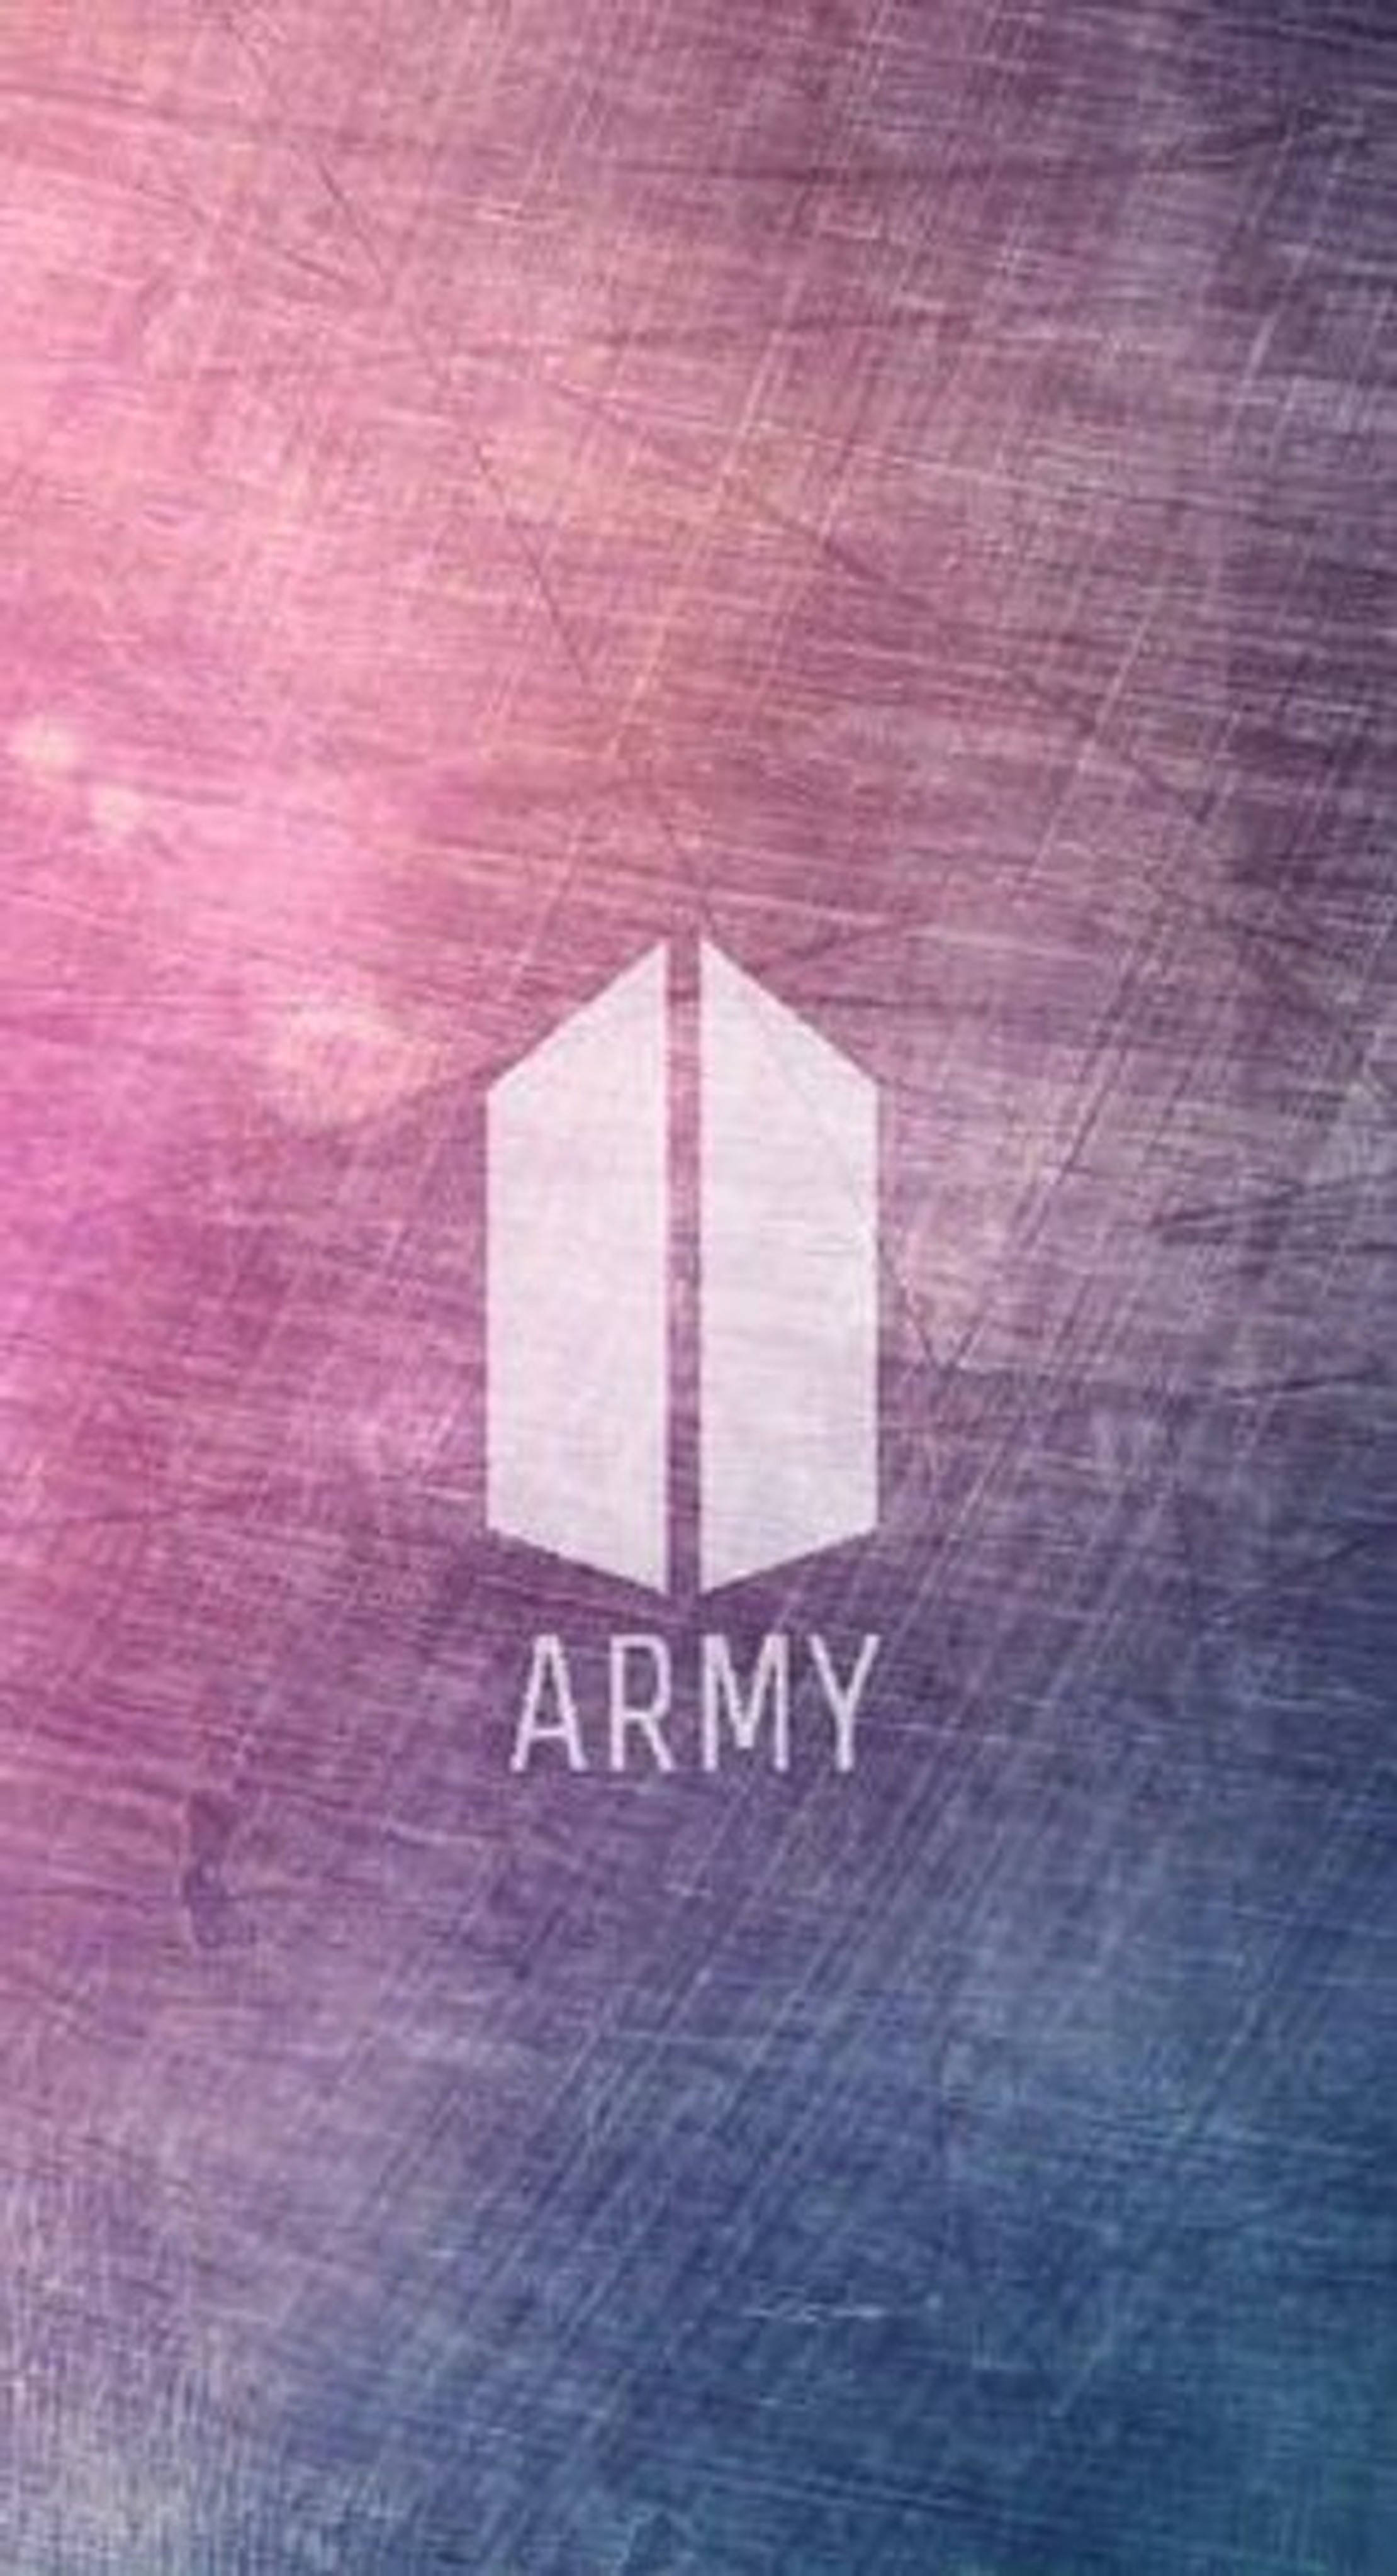 BTS Army Fandom Symbol Wallpaper